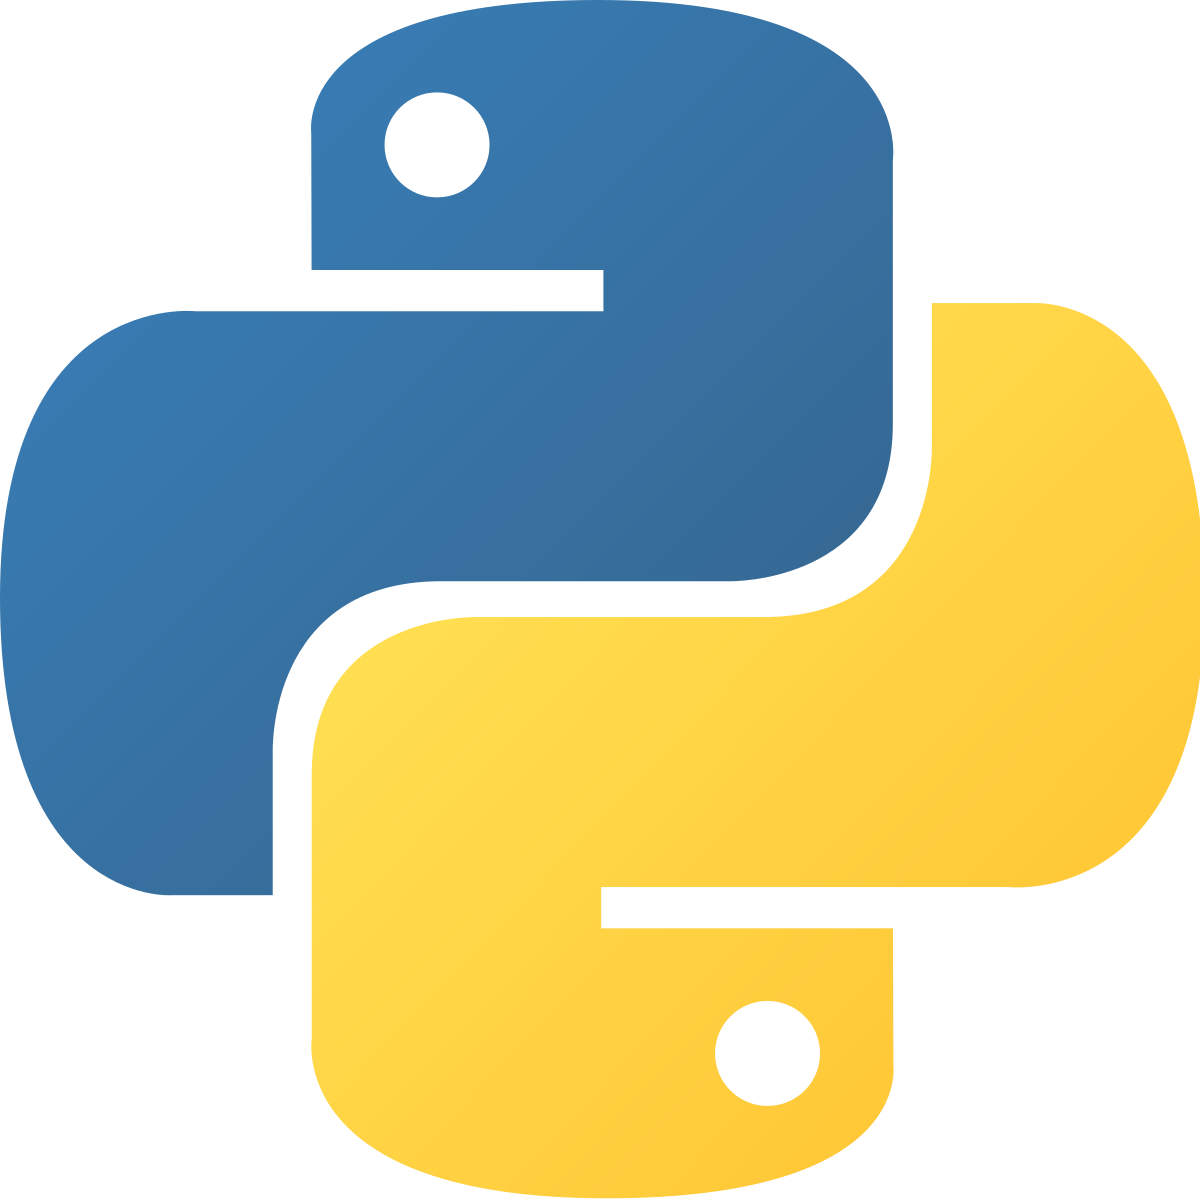 1200px-Python-logo-notext.svg.png